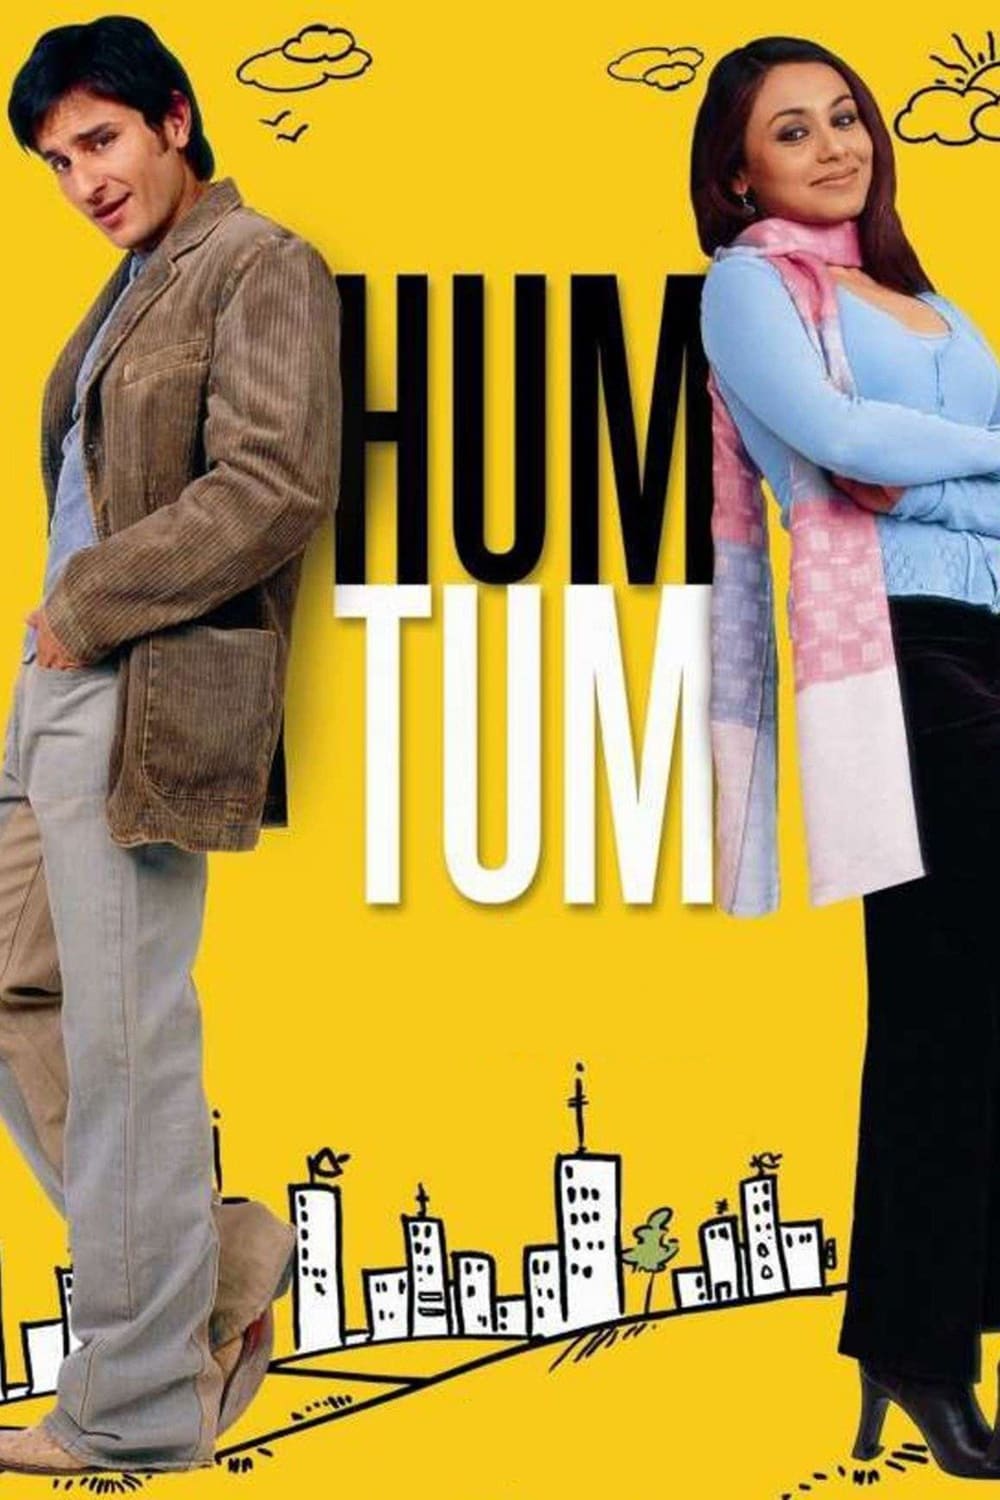 hum tum movie online